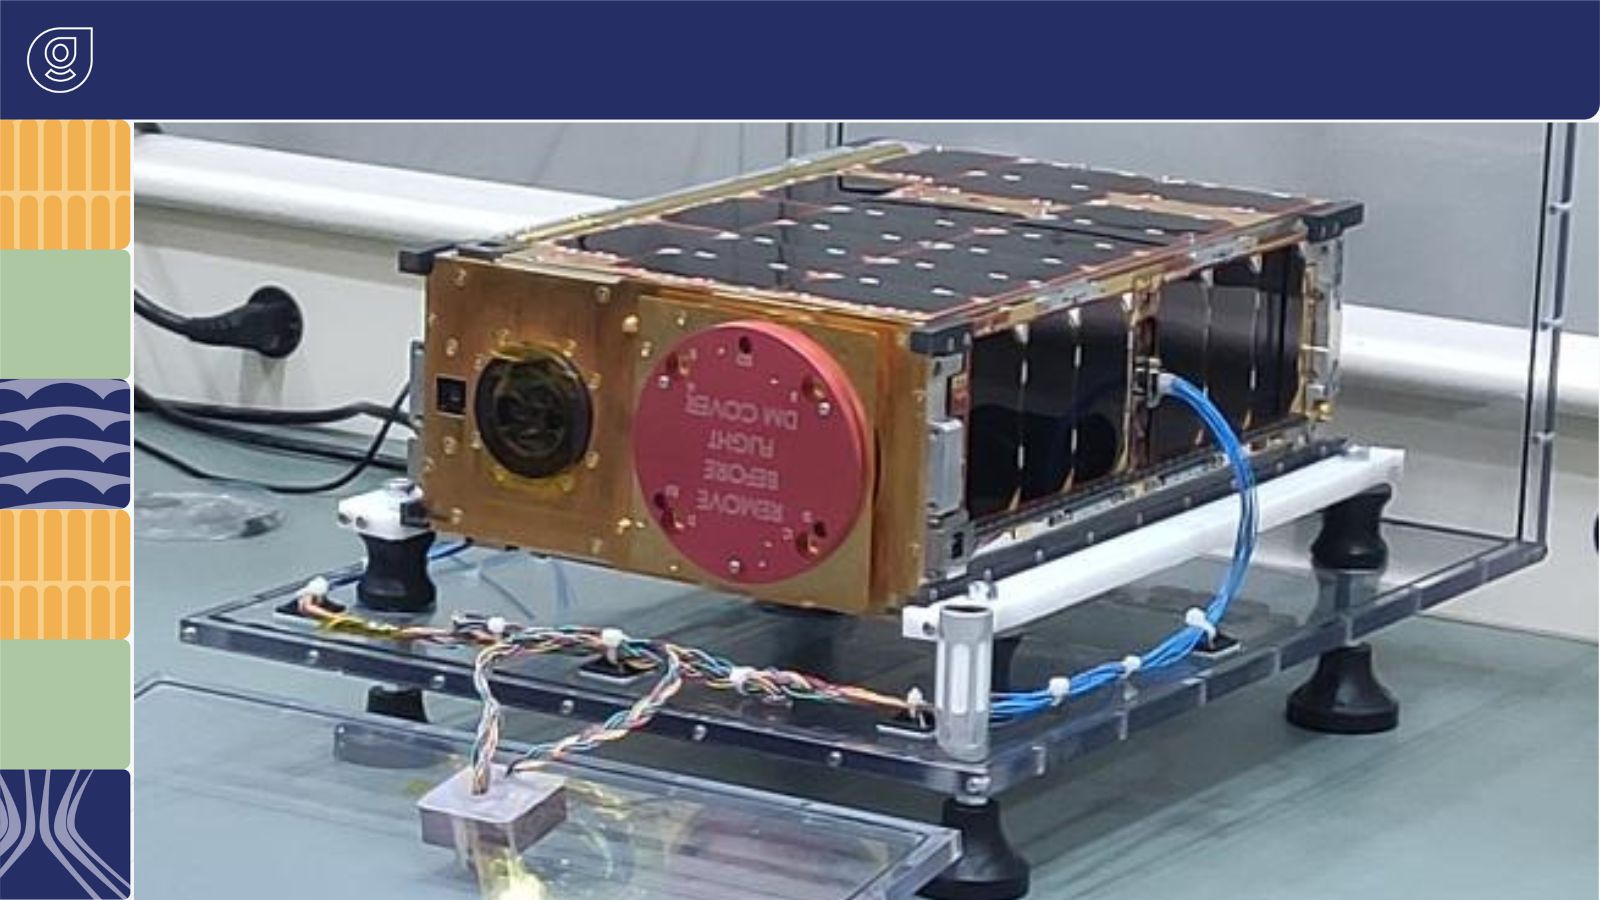 Satélite desenvolvido no ITA enviado à Nasa para lançamento janela de lançamento